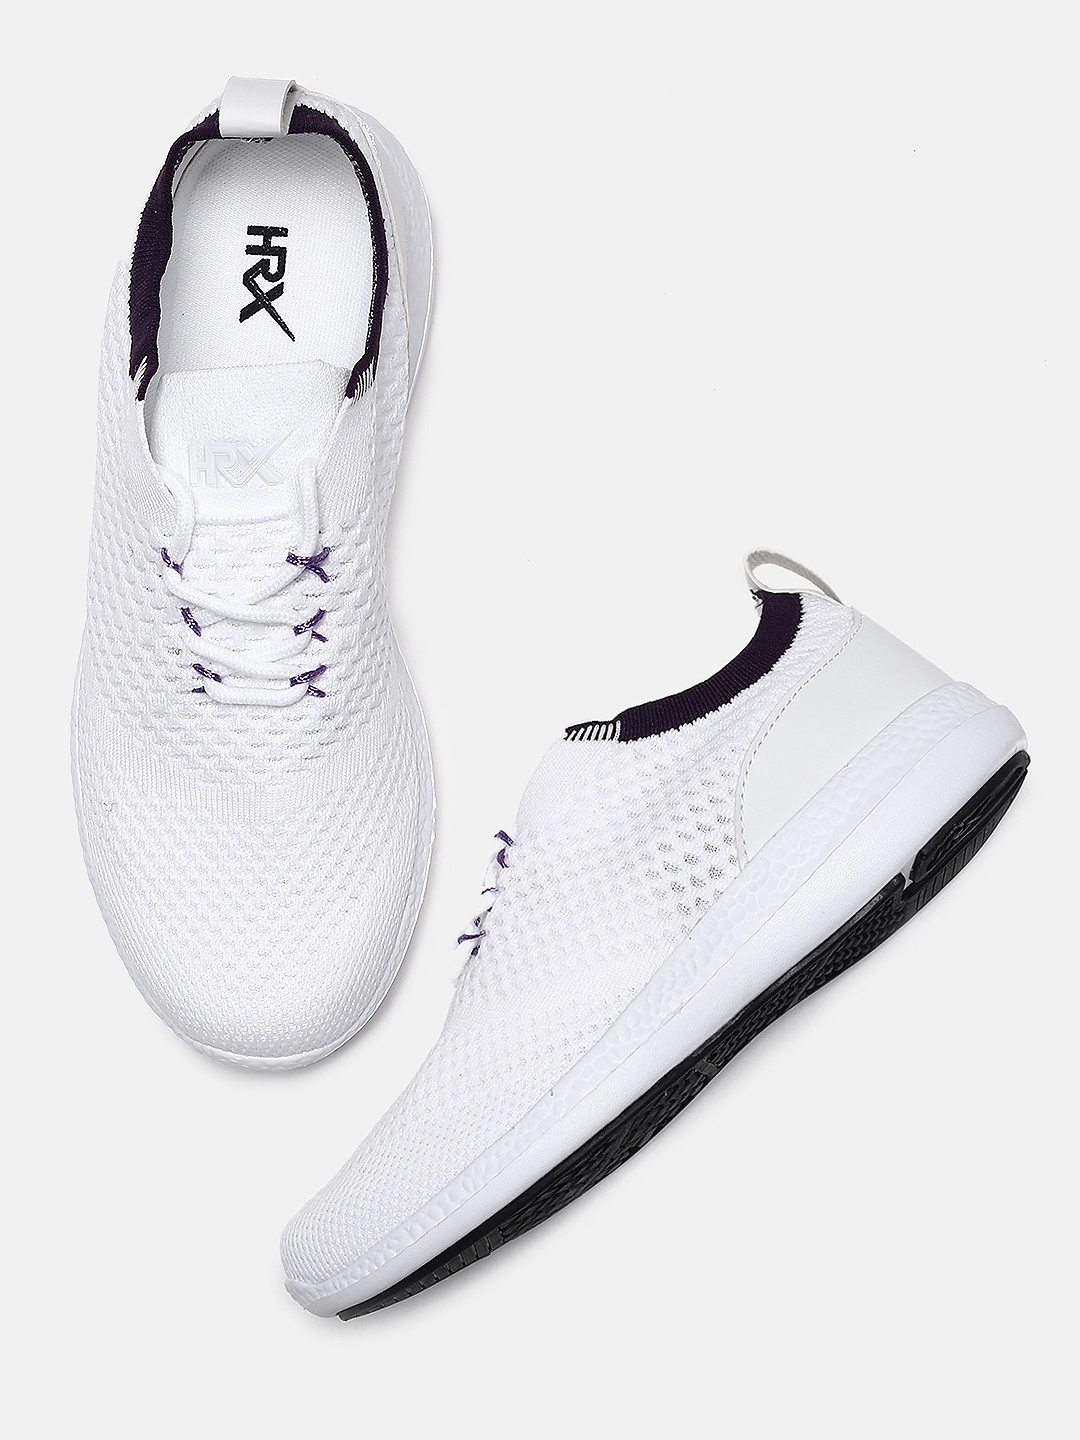 hrx sports shoes white